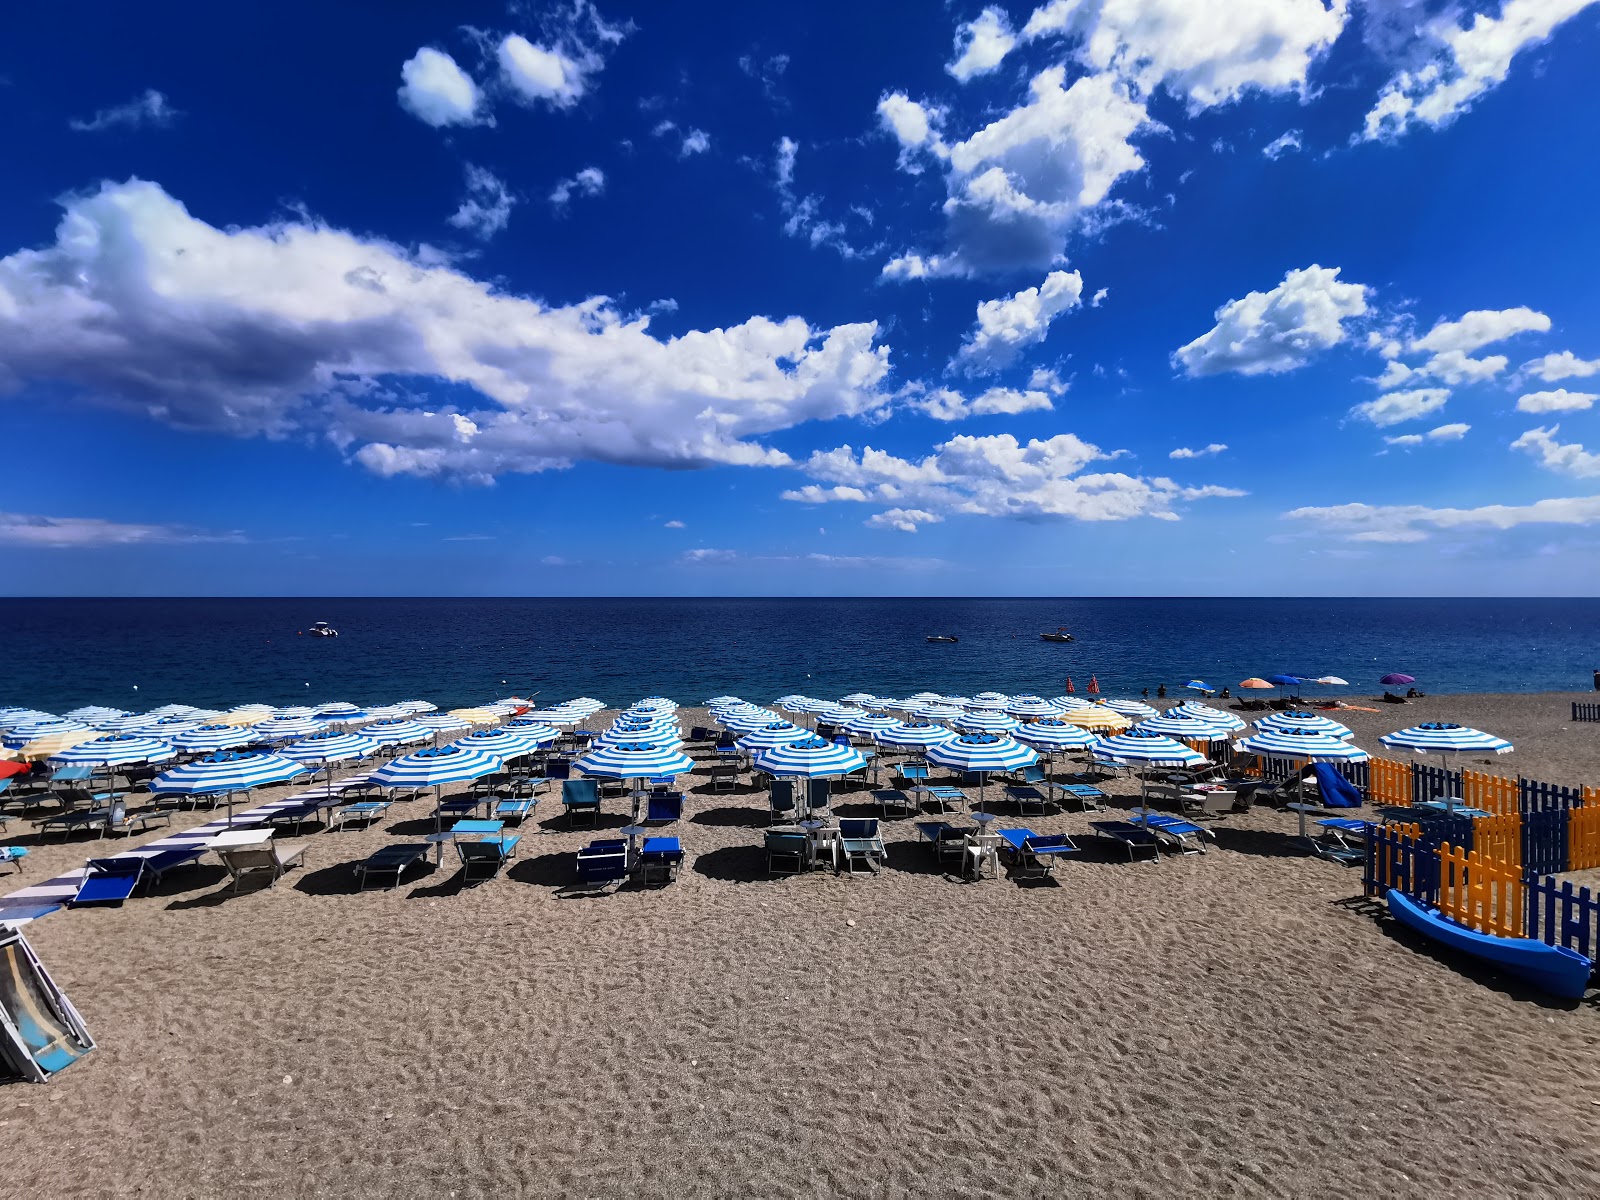 Fotografie cu Gioiosa Jonica beach cu o suprafață de apa albastra